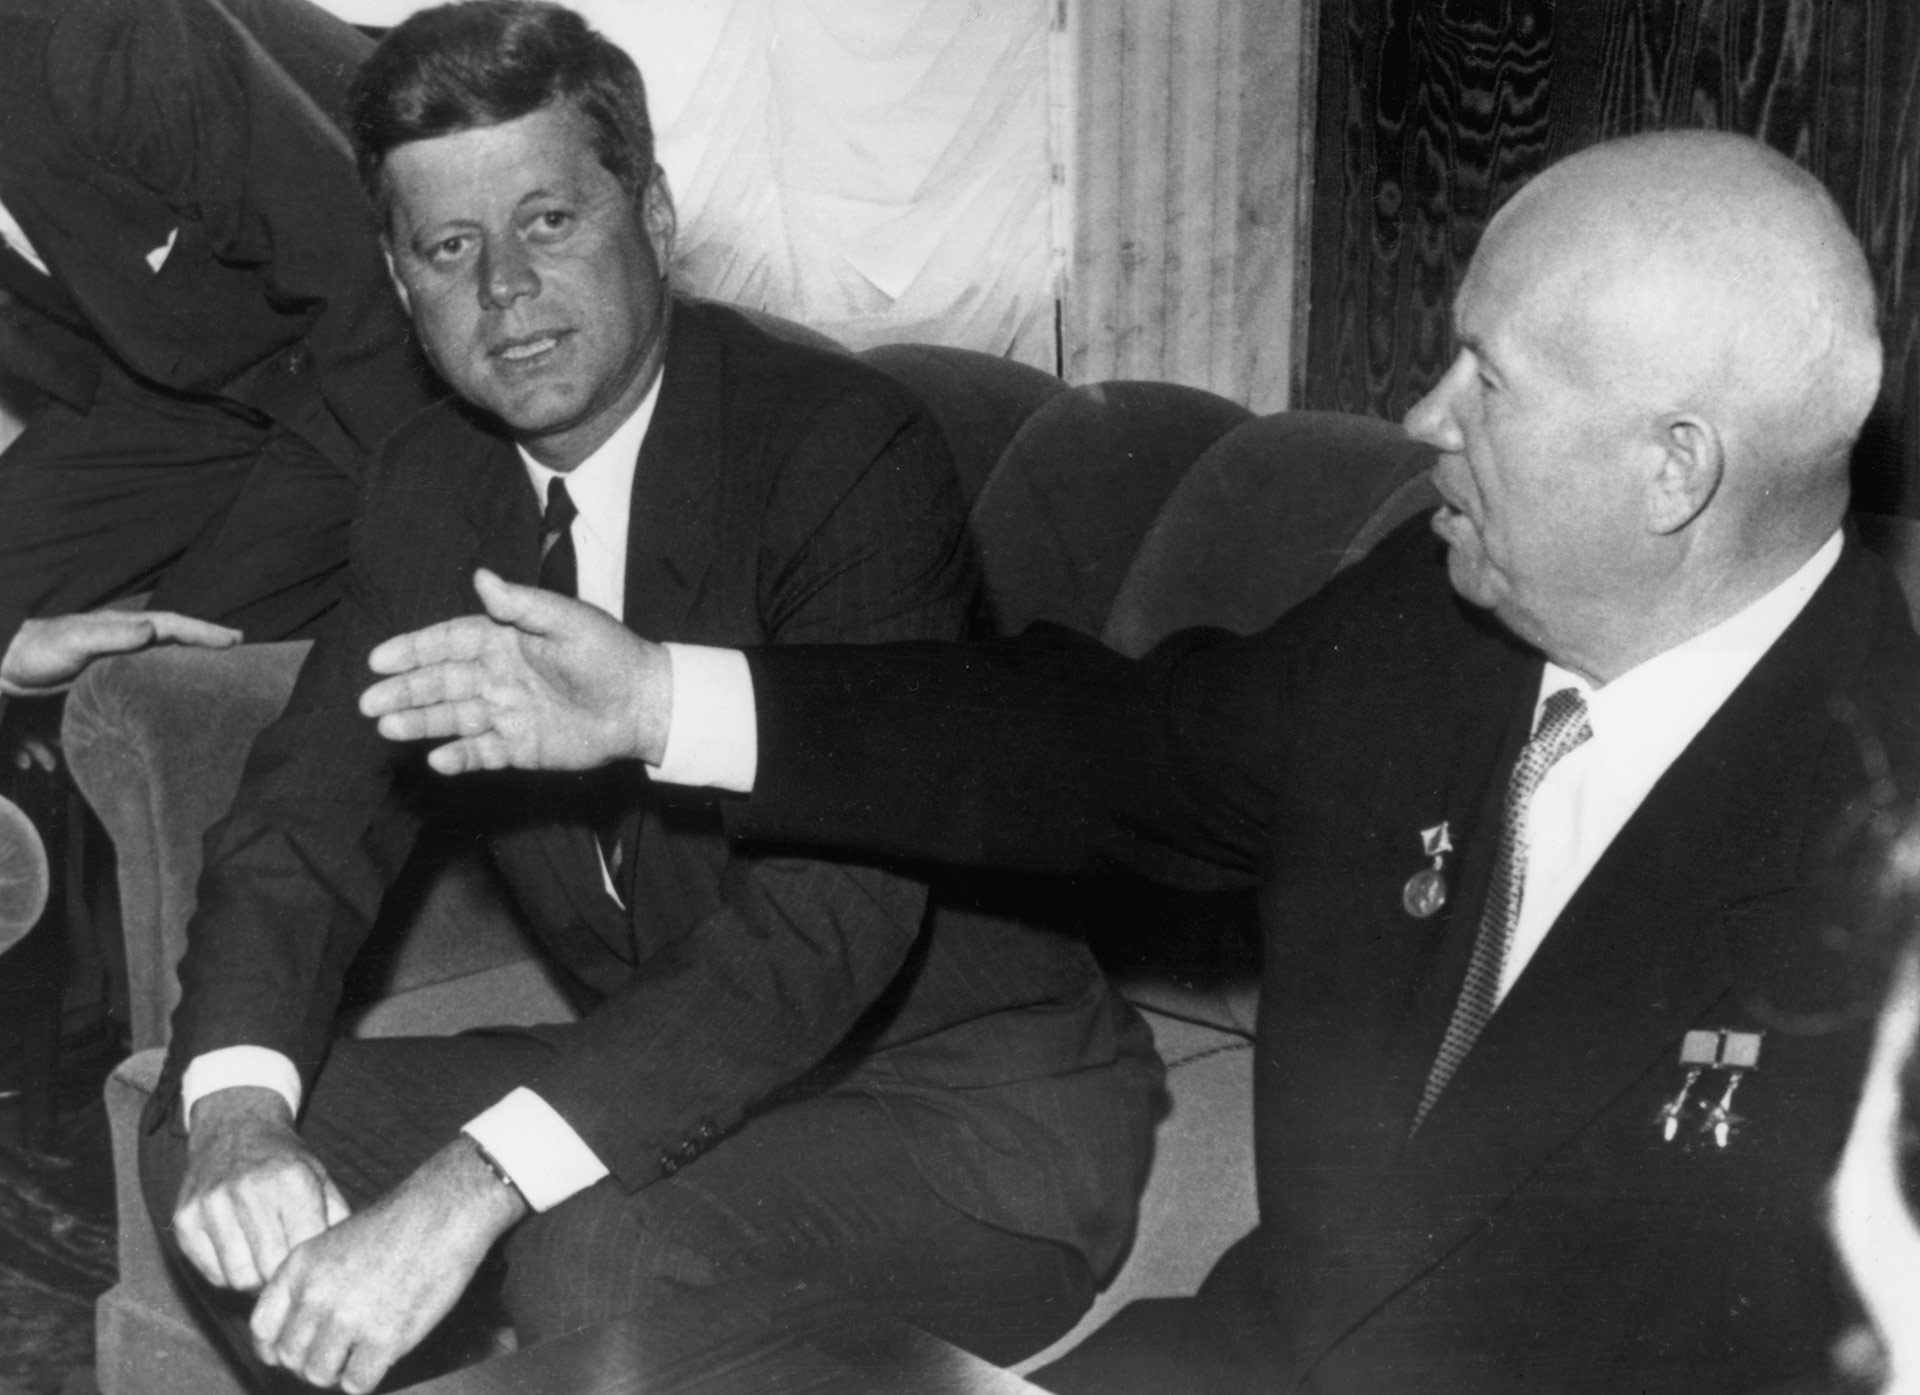 Kennedy junto al premier sovético Nikita Khrushchev durante una reunión entre ambos líderes en Viena, en 1961 (Central Press/Hulton Archive/Getty Images)